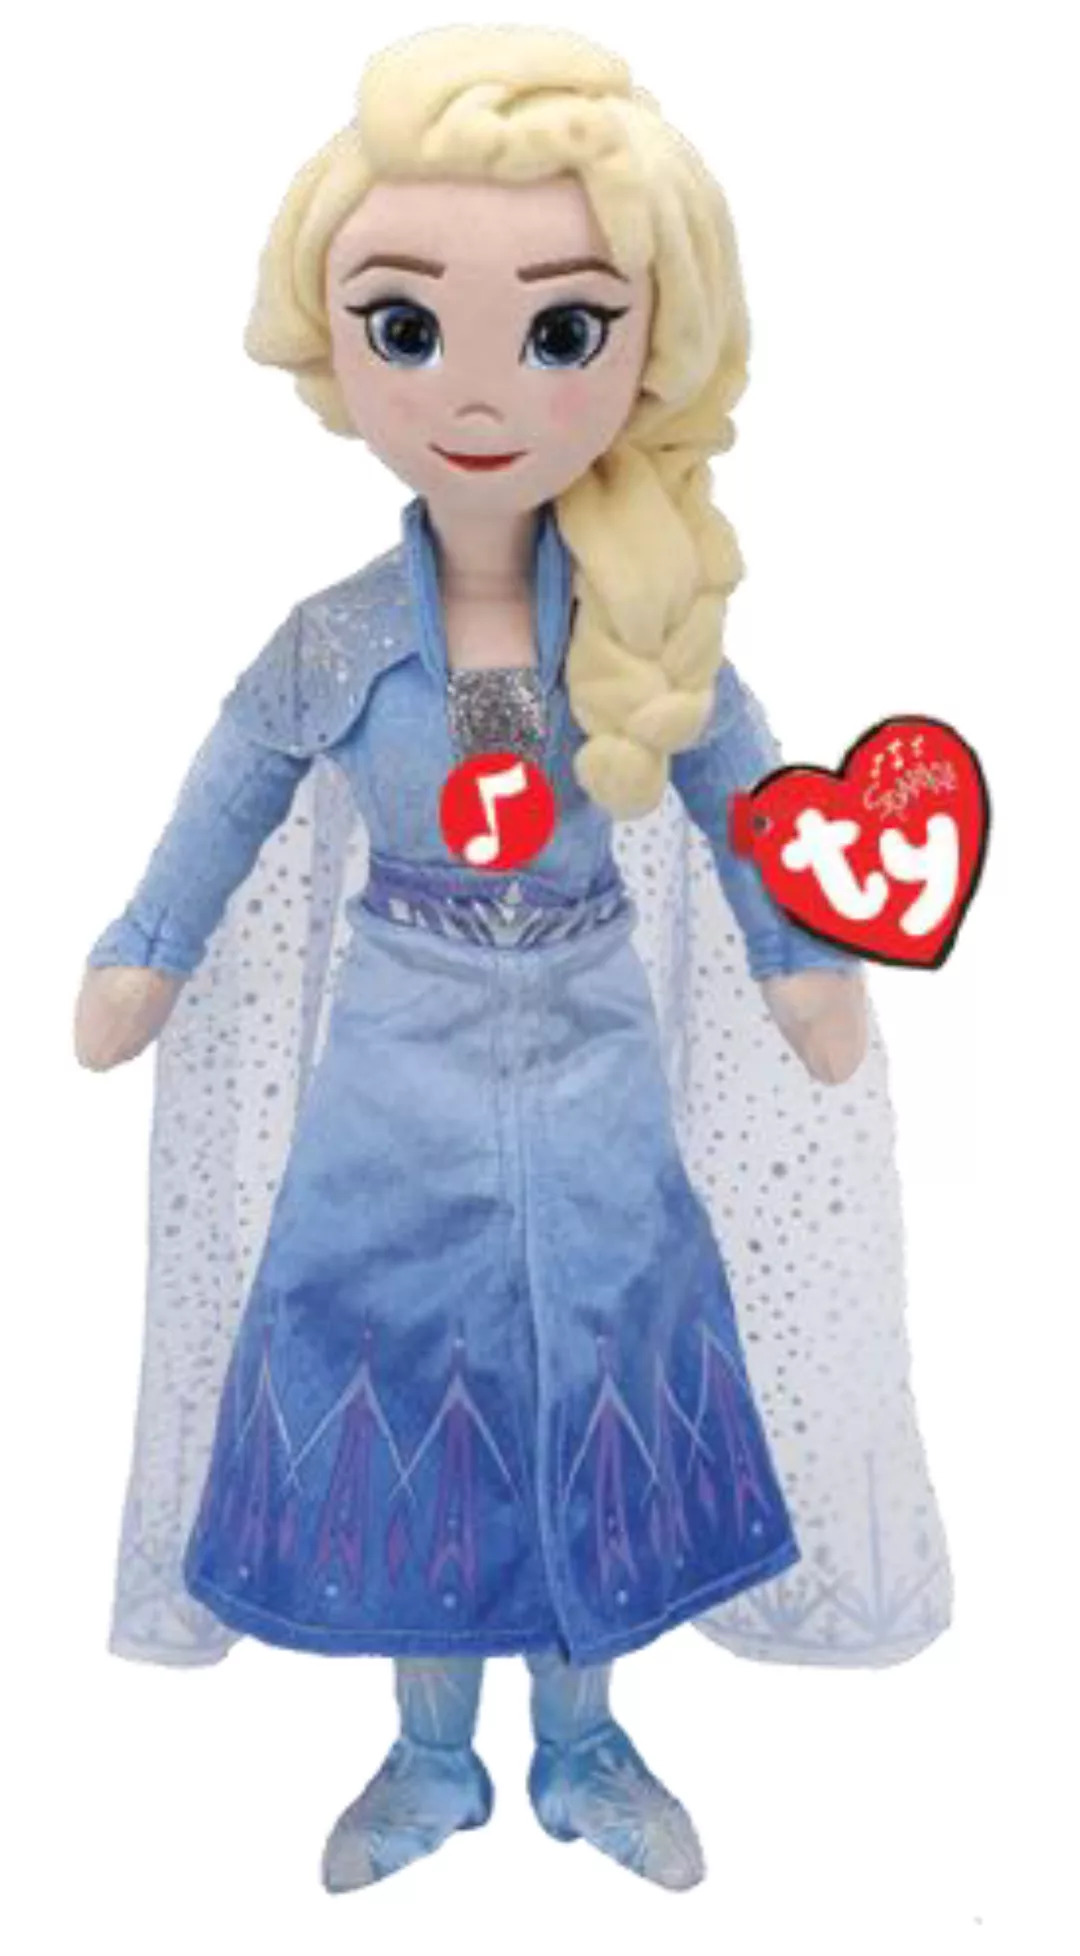 Plüschfigur Disney Frozen 2 - Elsa Prinzessin Mit Sound - 40 Cm günstig online kaufen